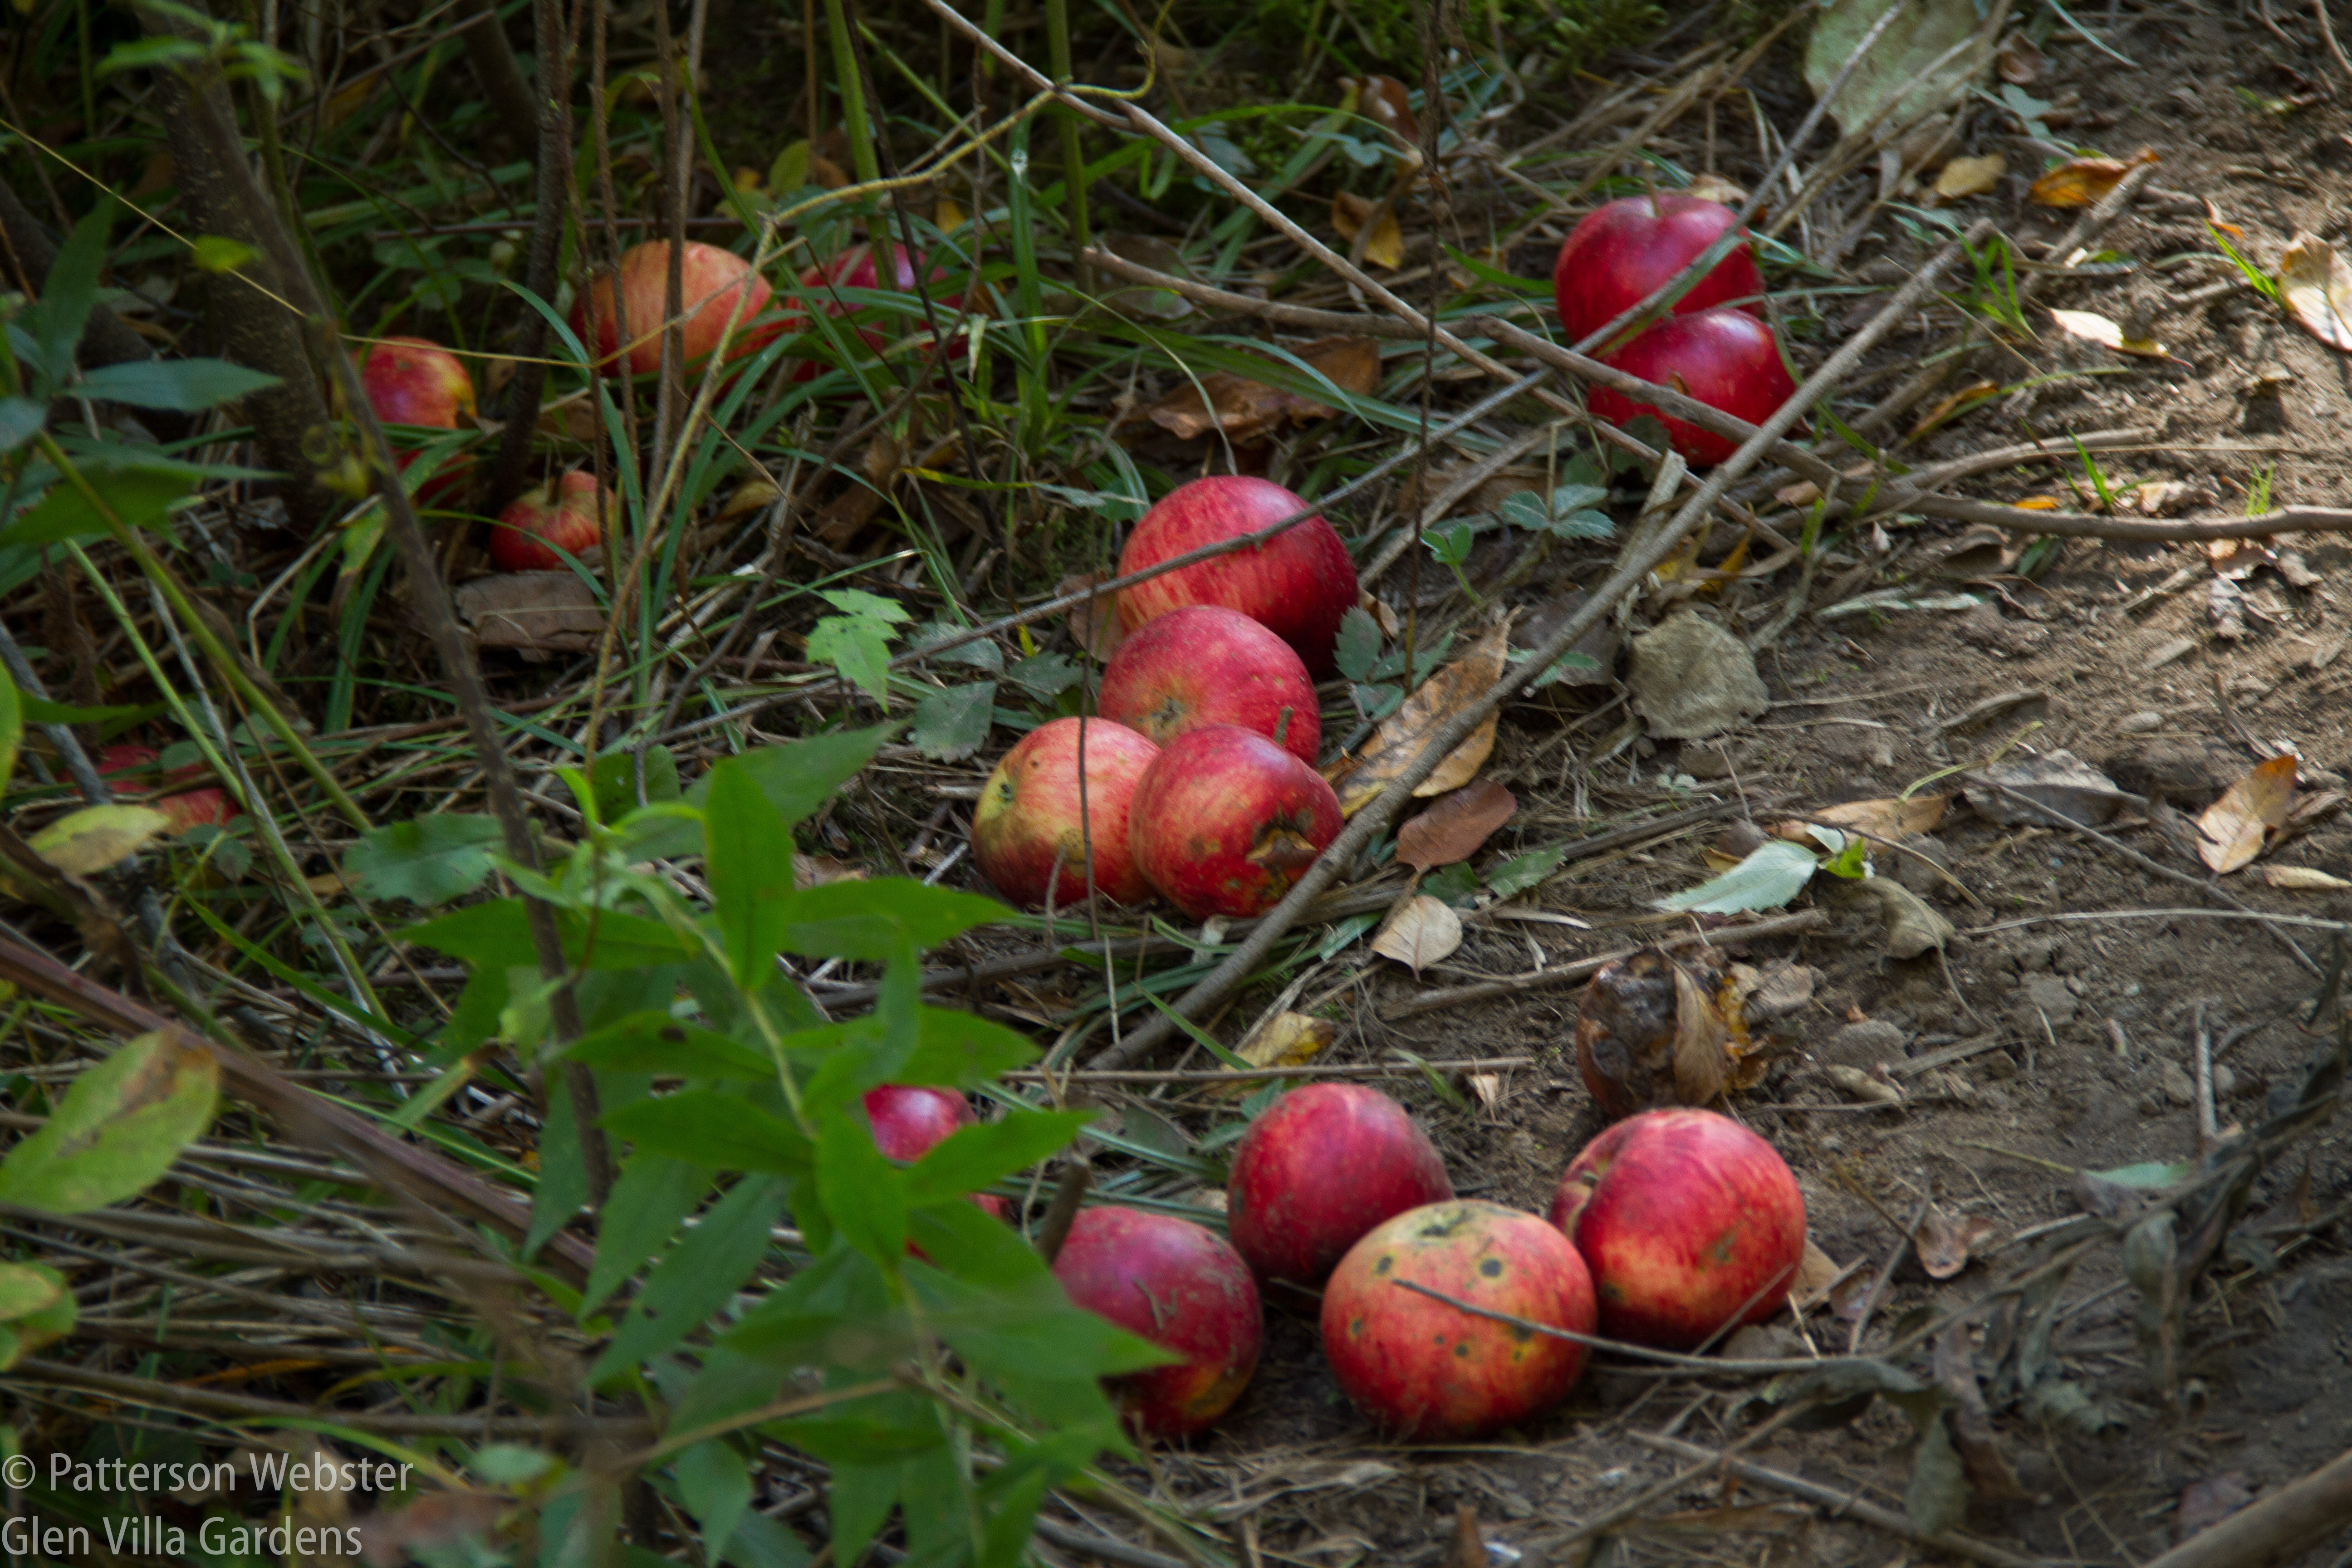 Fallen apples in the woods.